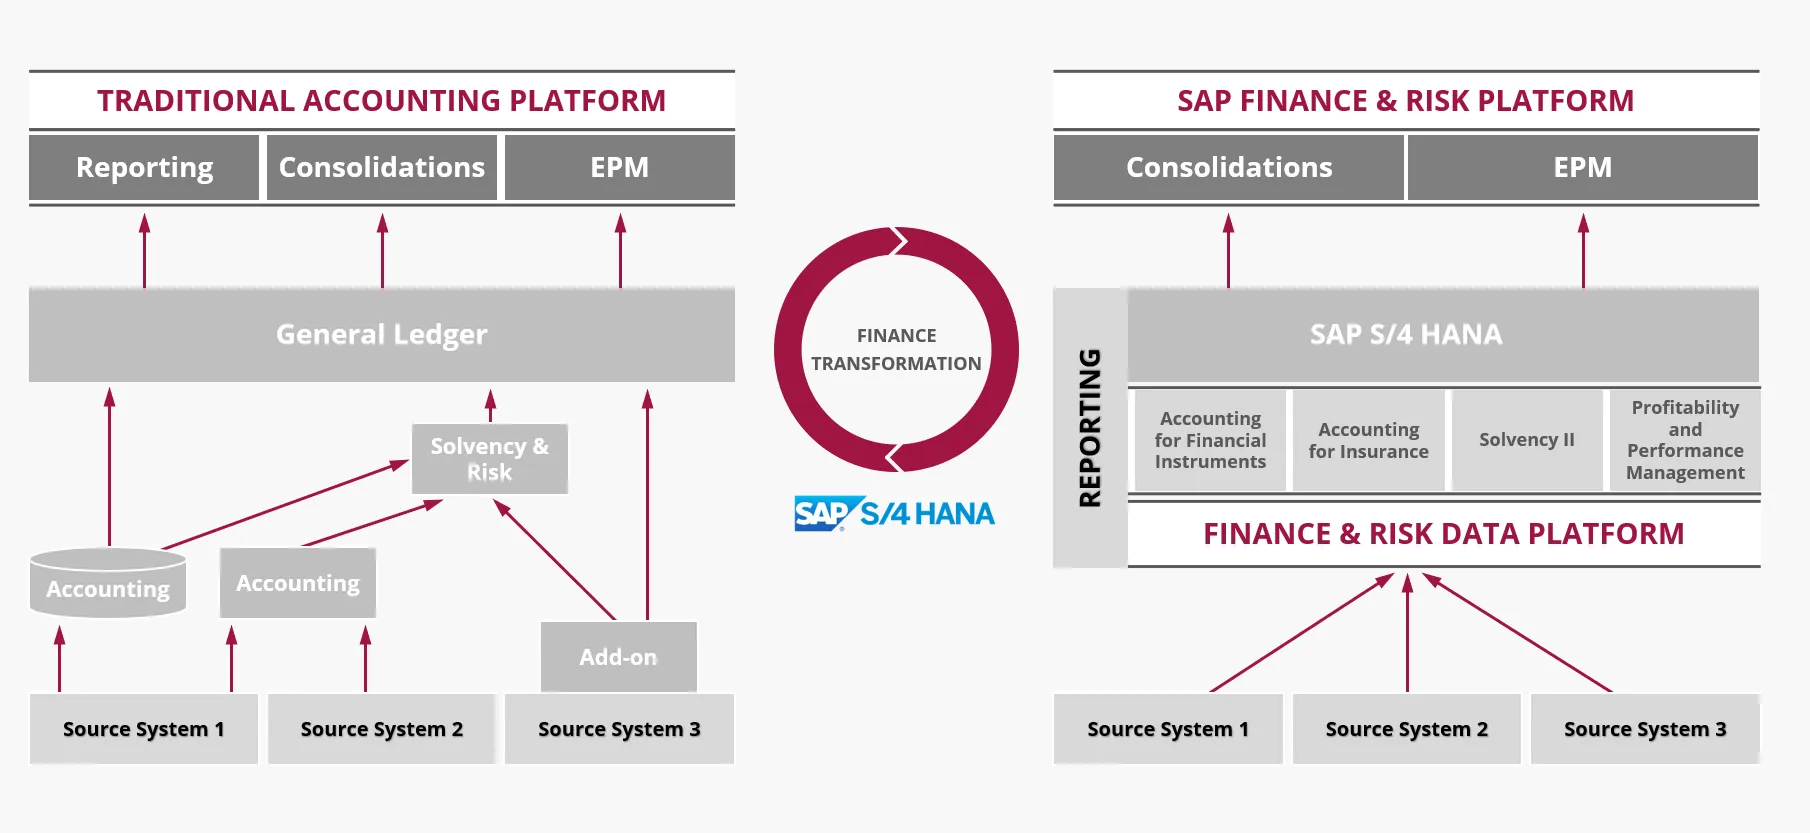 SAP FPSL Finance & Risk Platform